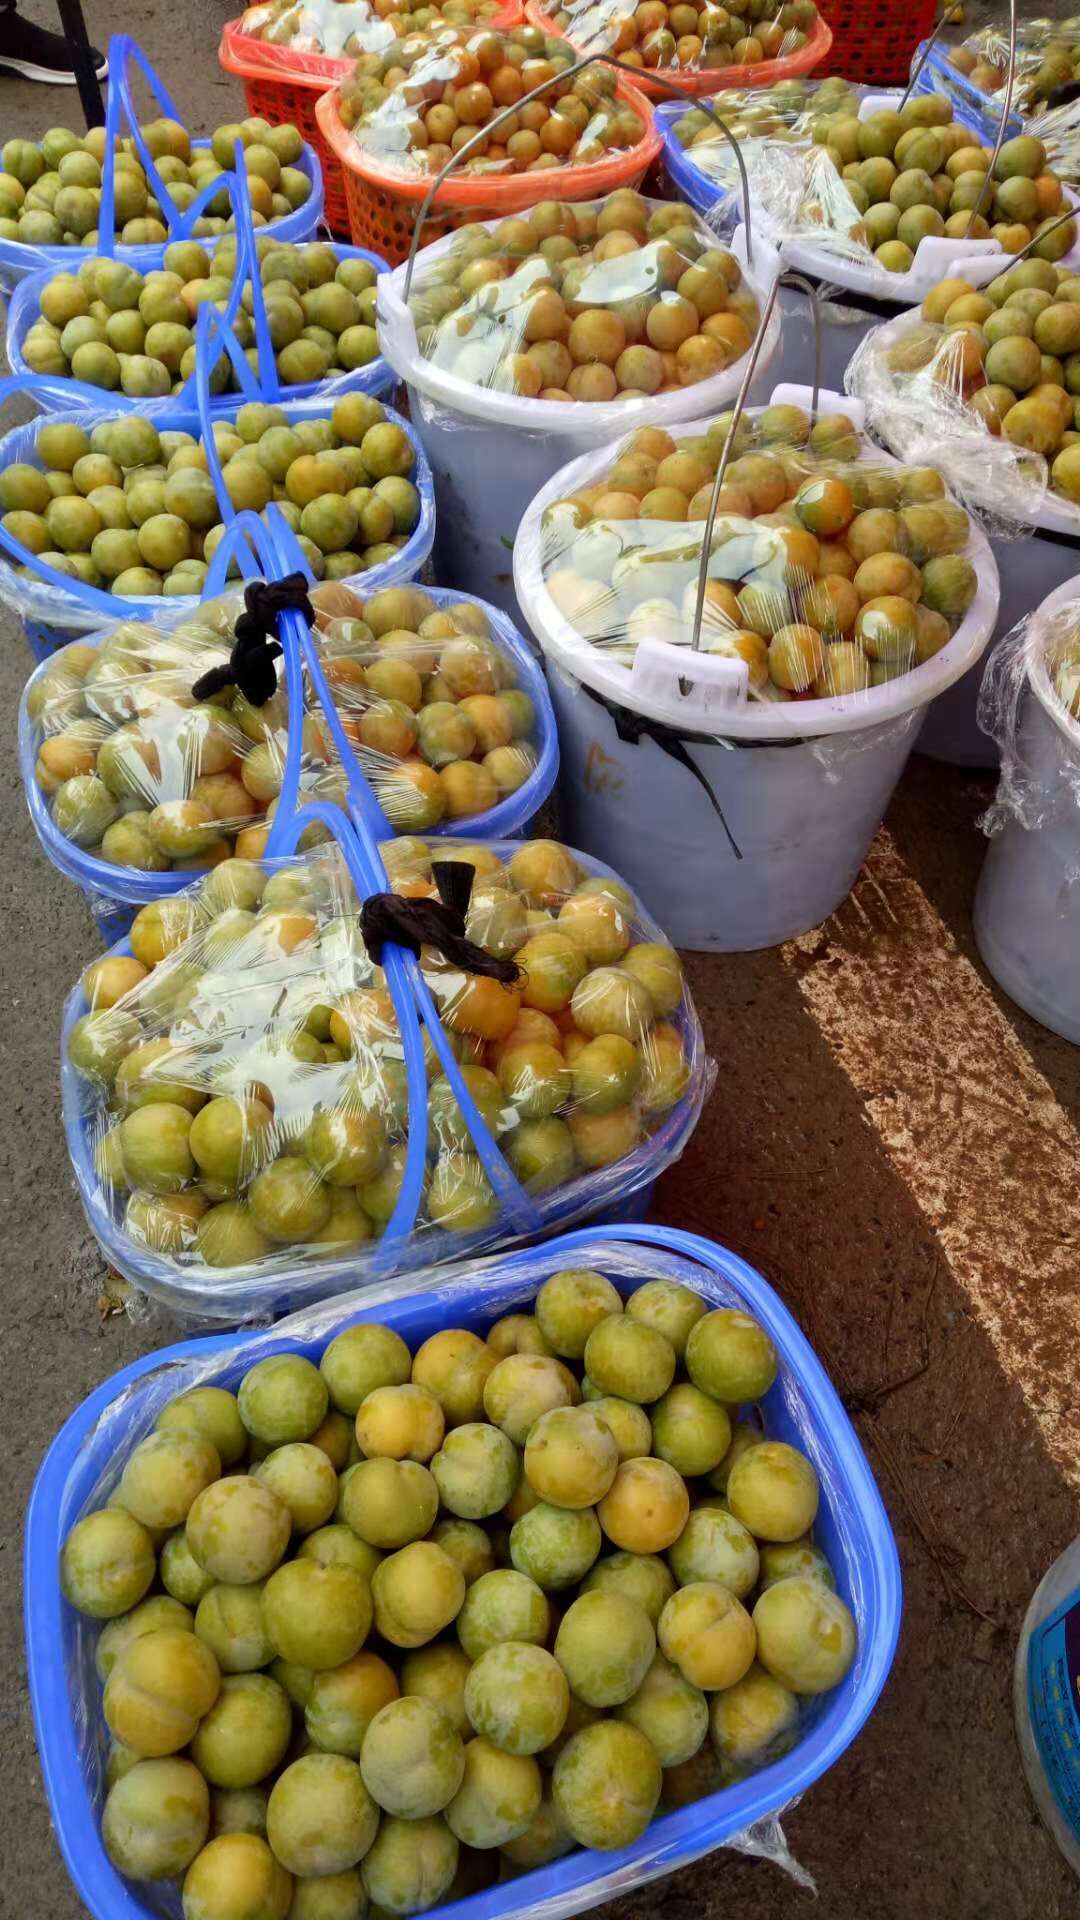 广西玉林蜂糖李苗培育种植基地-广西桂林蜂糖李子苗厂家批发价格